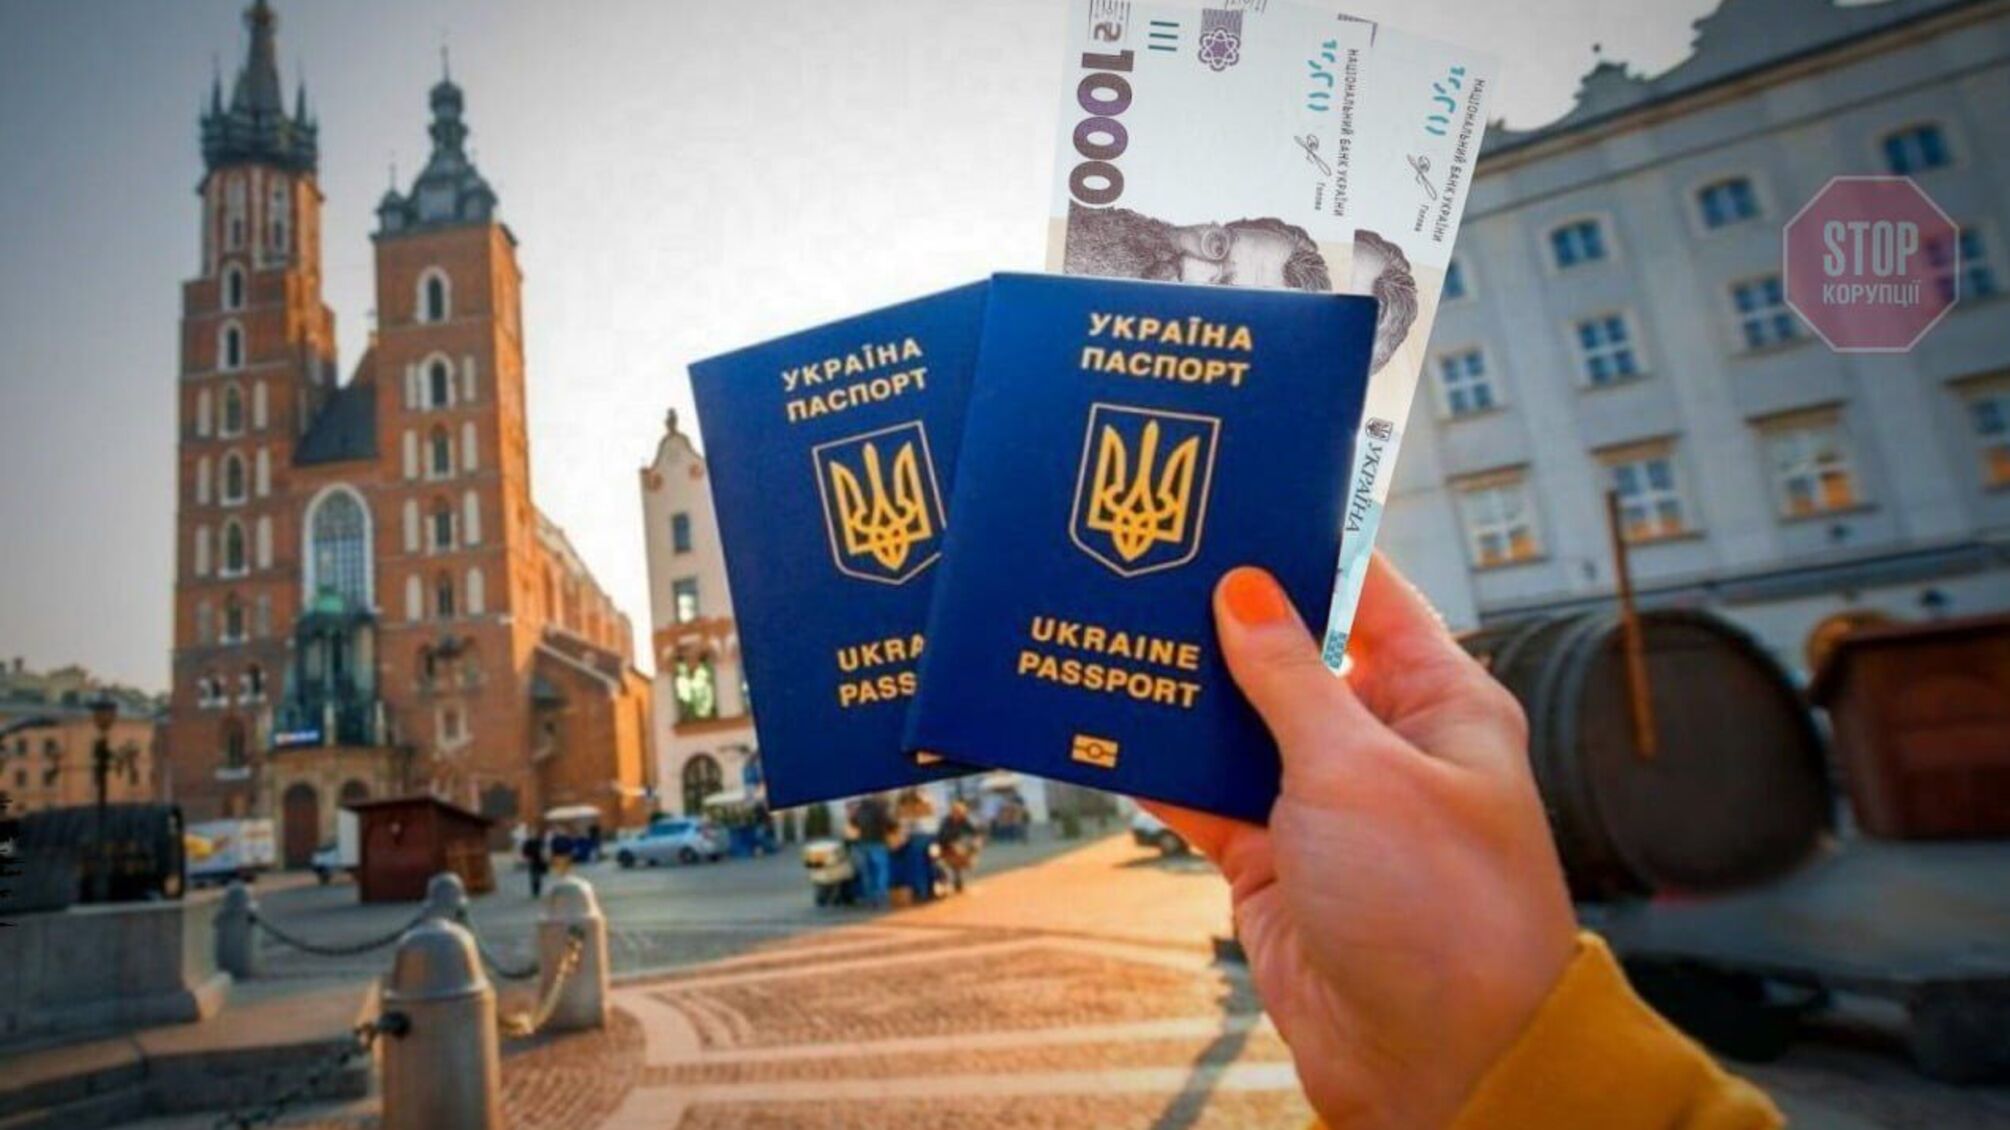 Реально ли оформить документы для выезда за границу в день? В Украине активизировались паспортные мошенники